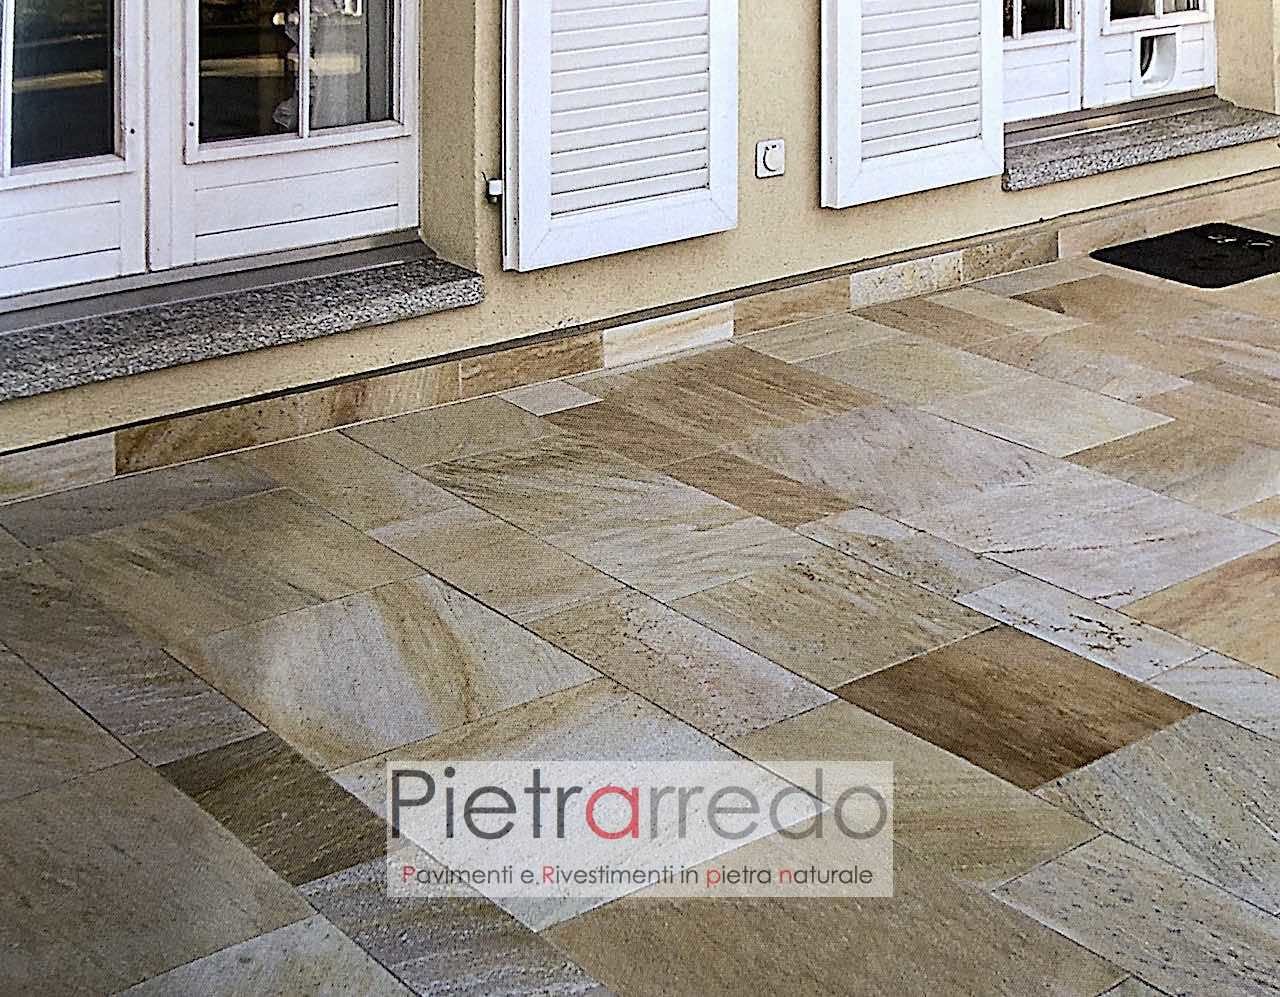 pavimenti in pietra naturale quarzite brasiliana gontero prezzo costi pietrarredo lastre pavimenti